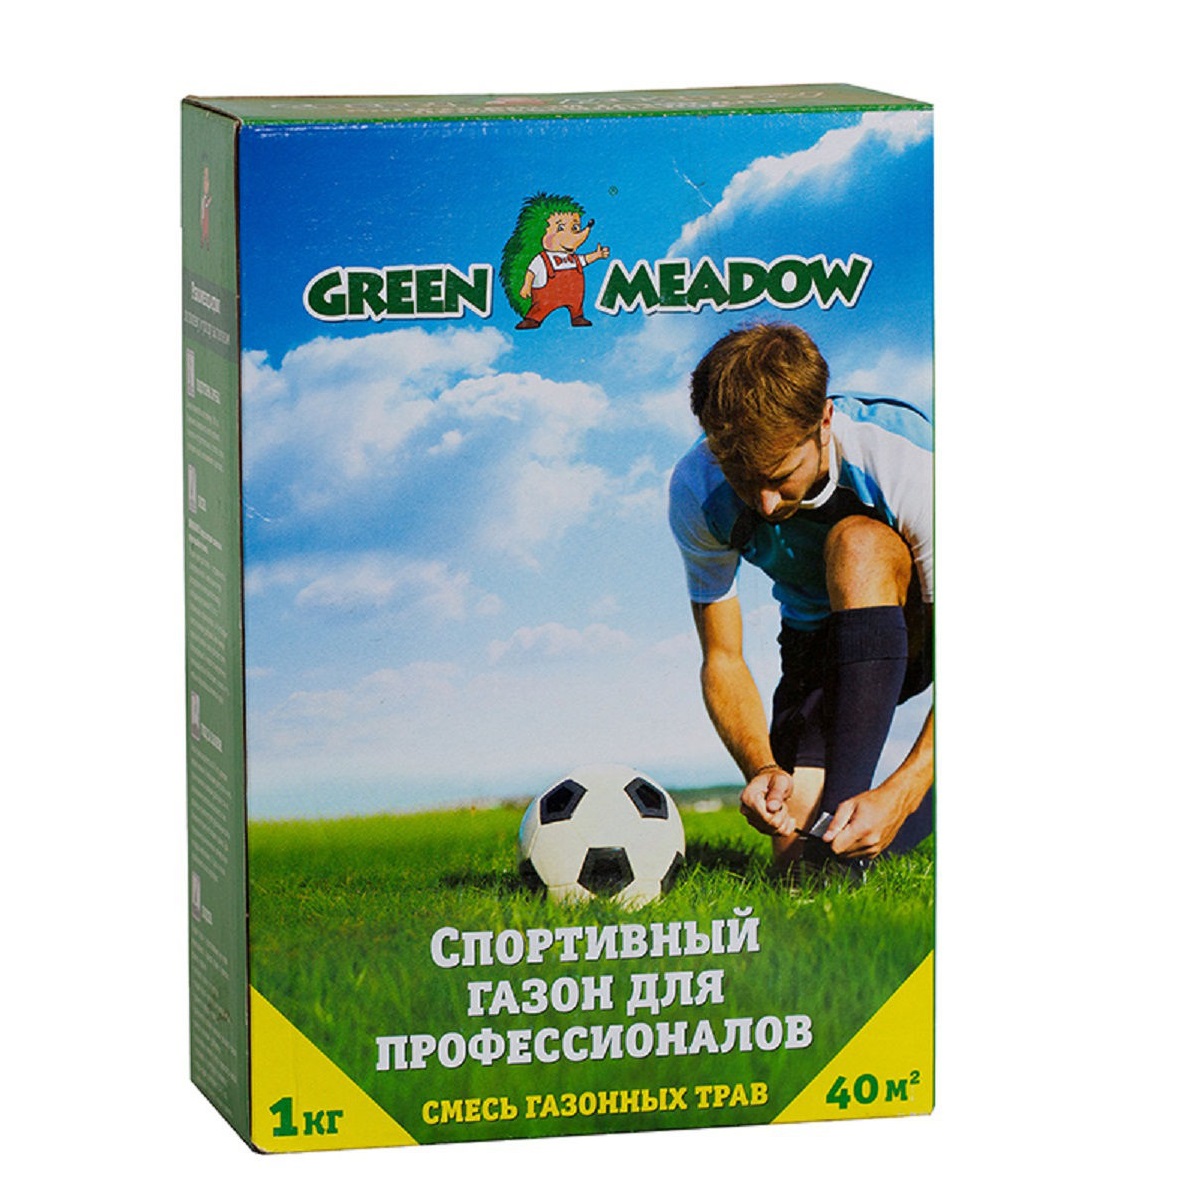 Газон Green Meadow спорт для профессионалов 1 кг газон green meadow декоративный элитарный 1 кг